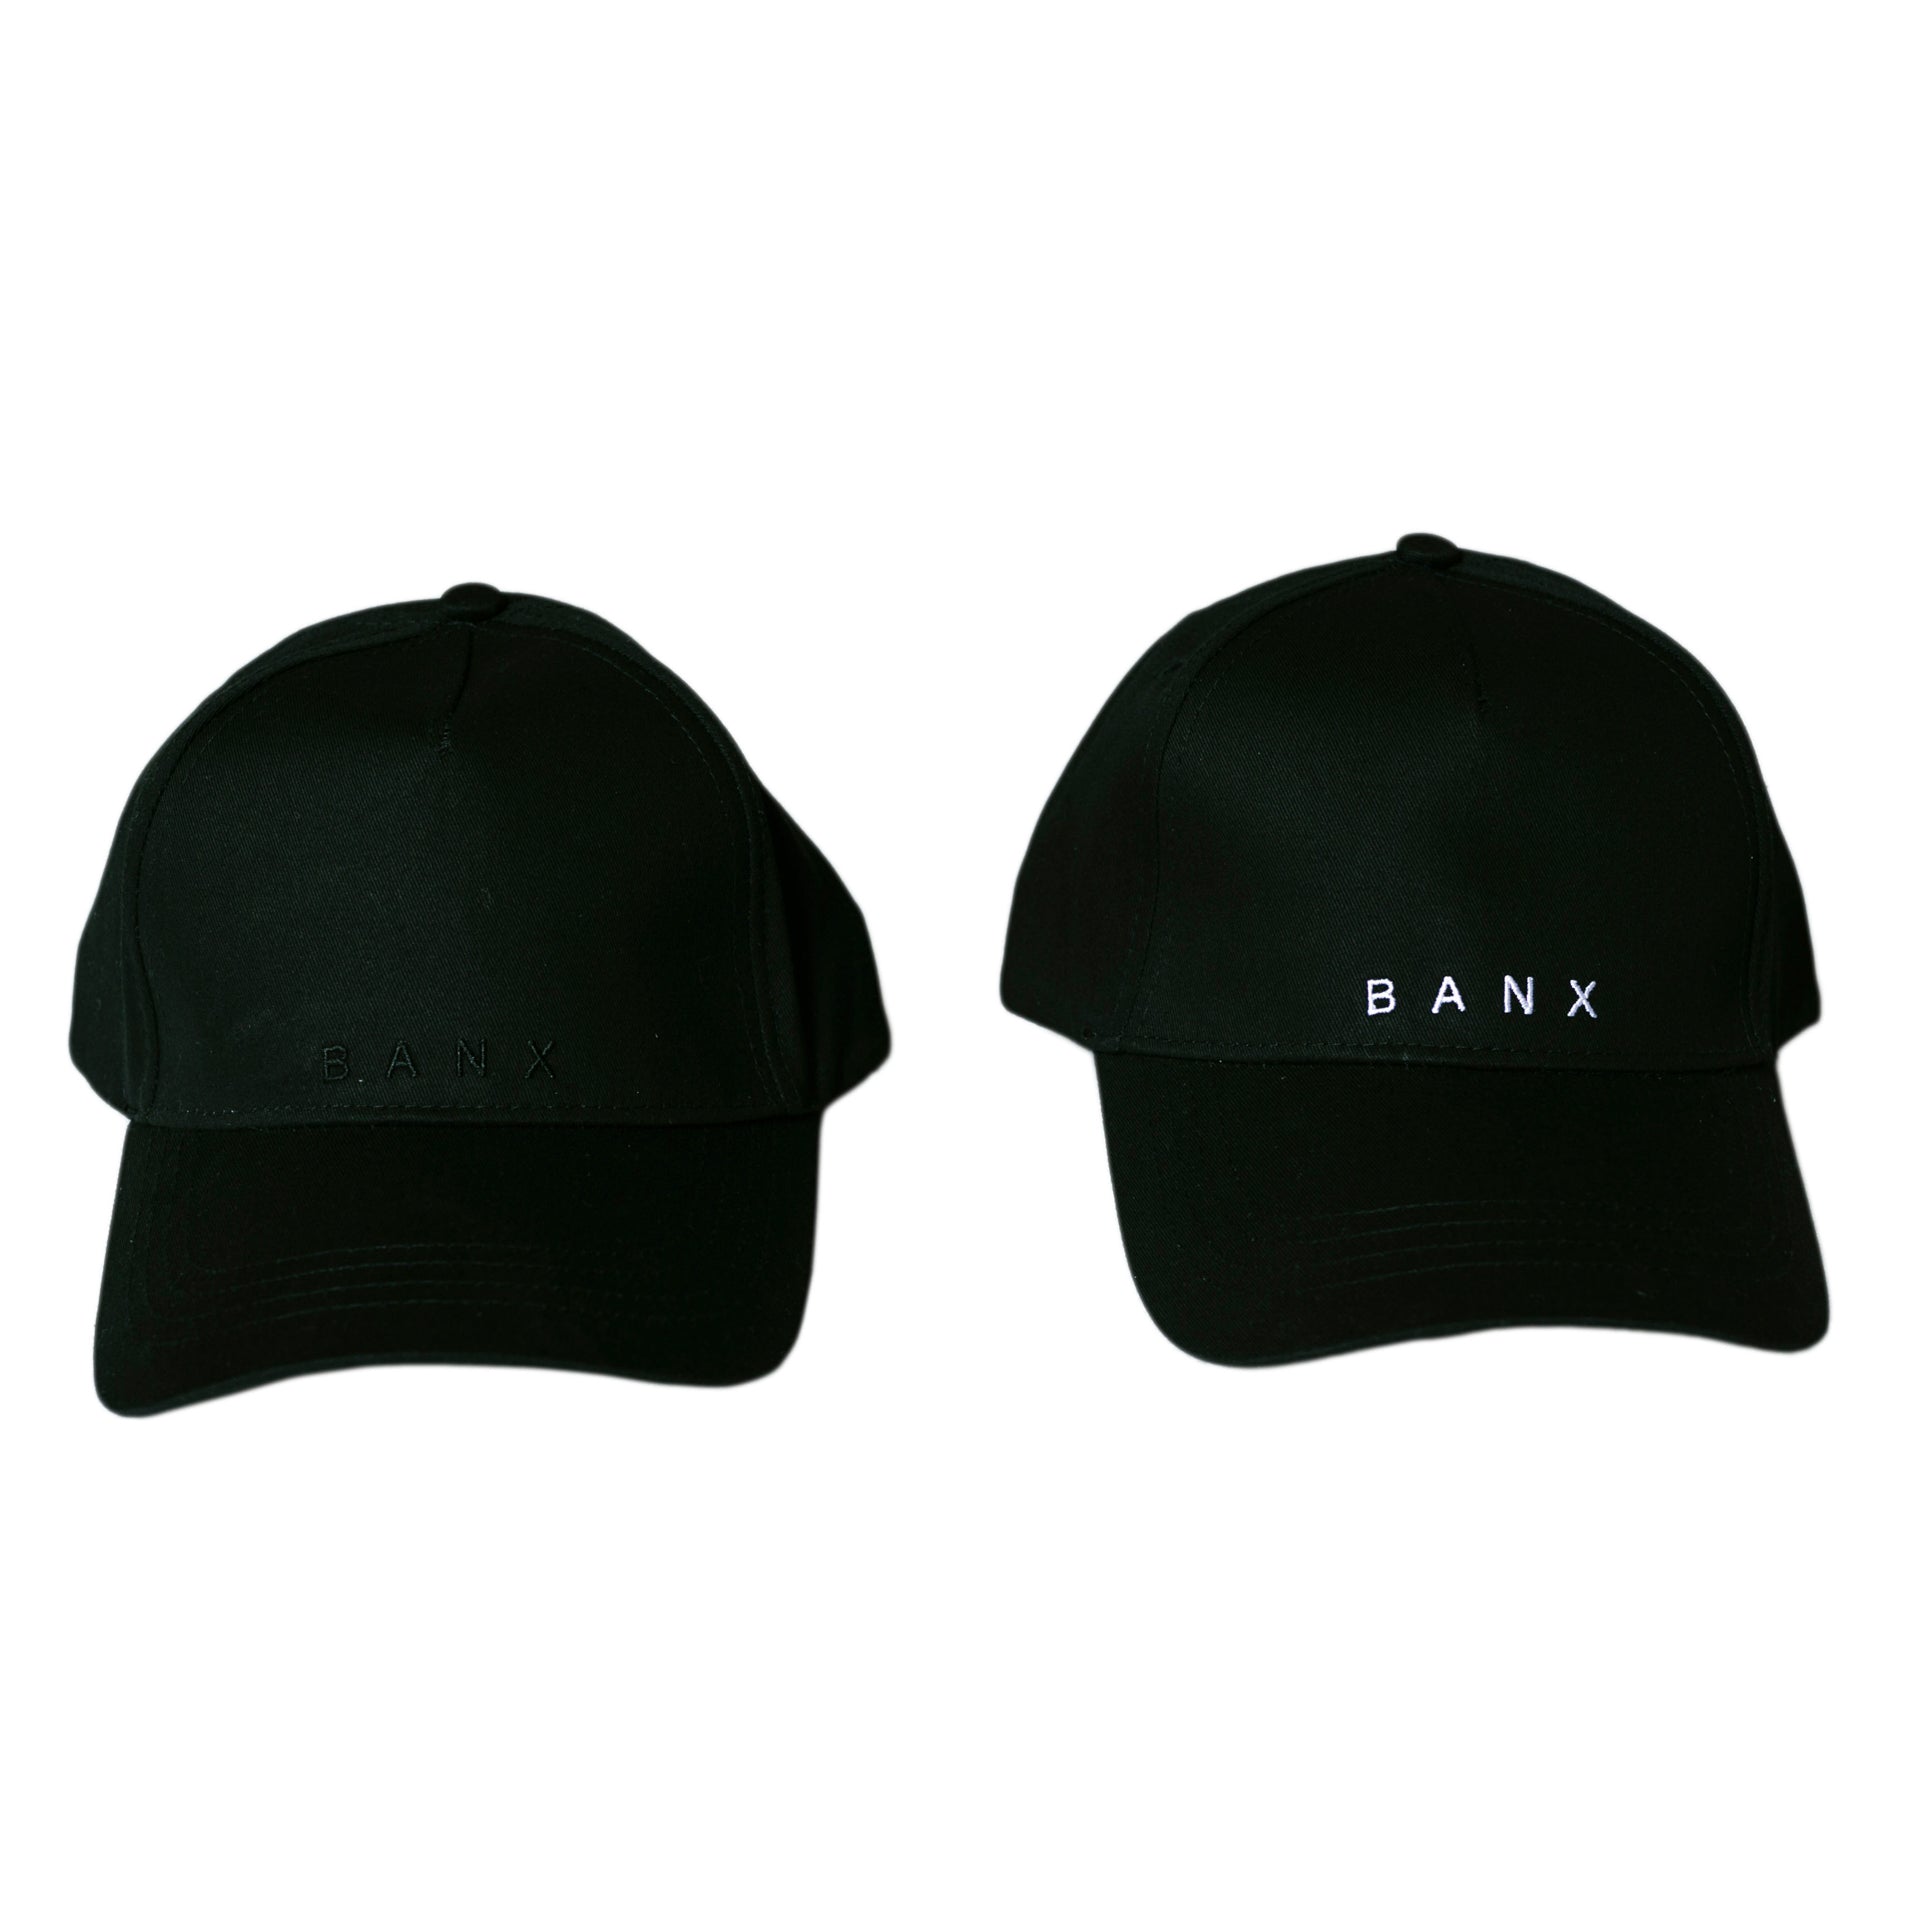 BANX DAD CAP - BANX TEXT